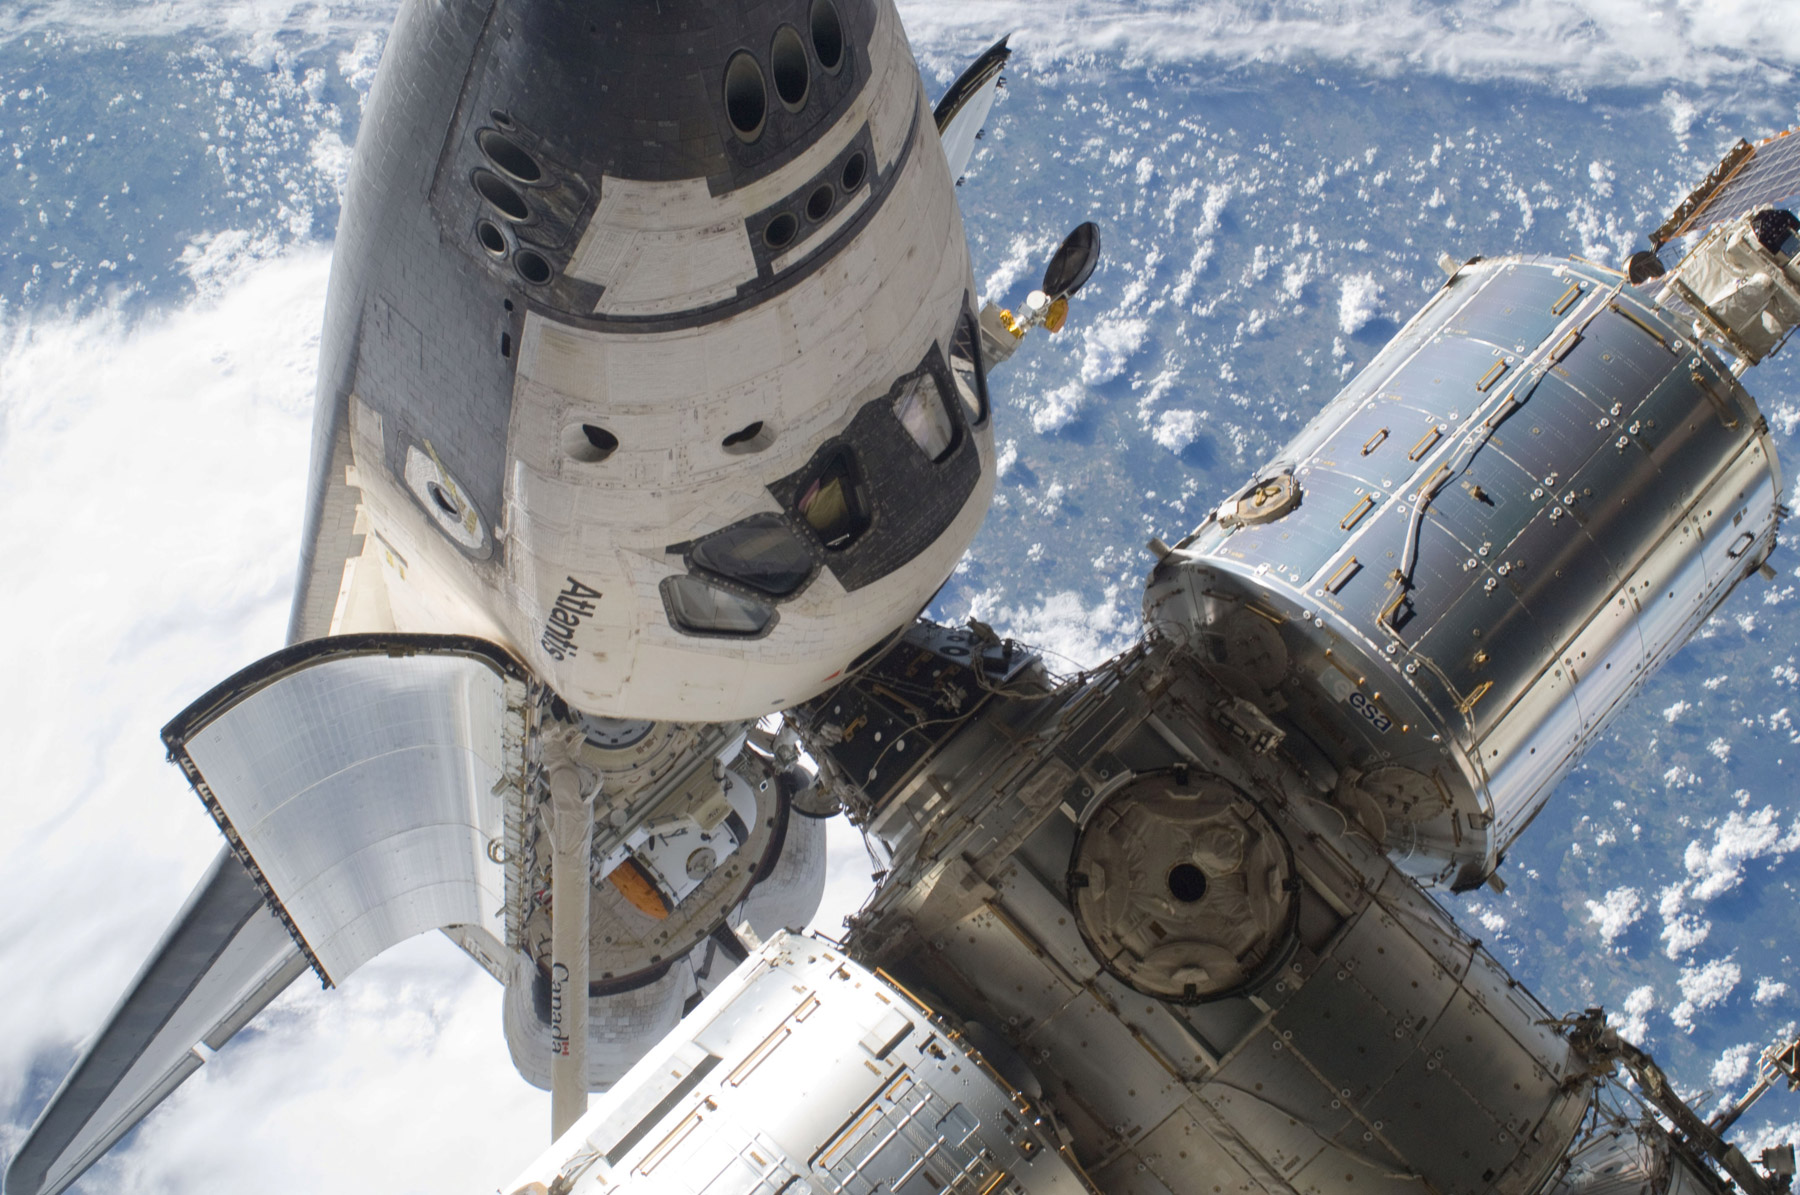 Le port d’amarrage principal sera situé sur le module Harmony de l'ISS. Sur cette image, la navette Atlantis, dont le programme a pris fin en 2011, est située à l'emplacement des futurs véhicules privés de transport habité. © Nasa